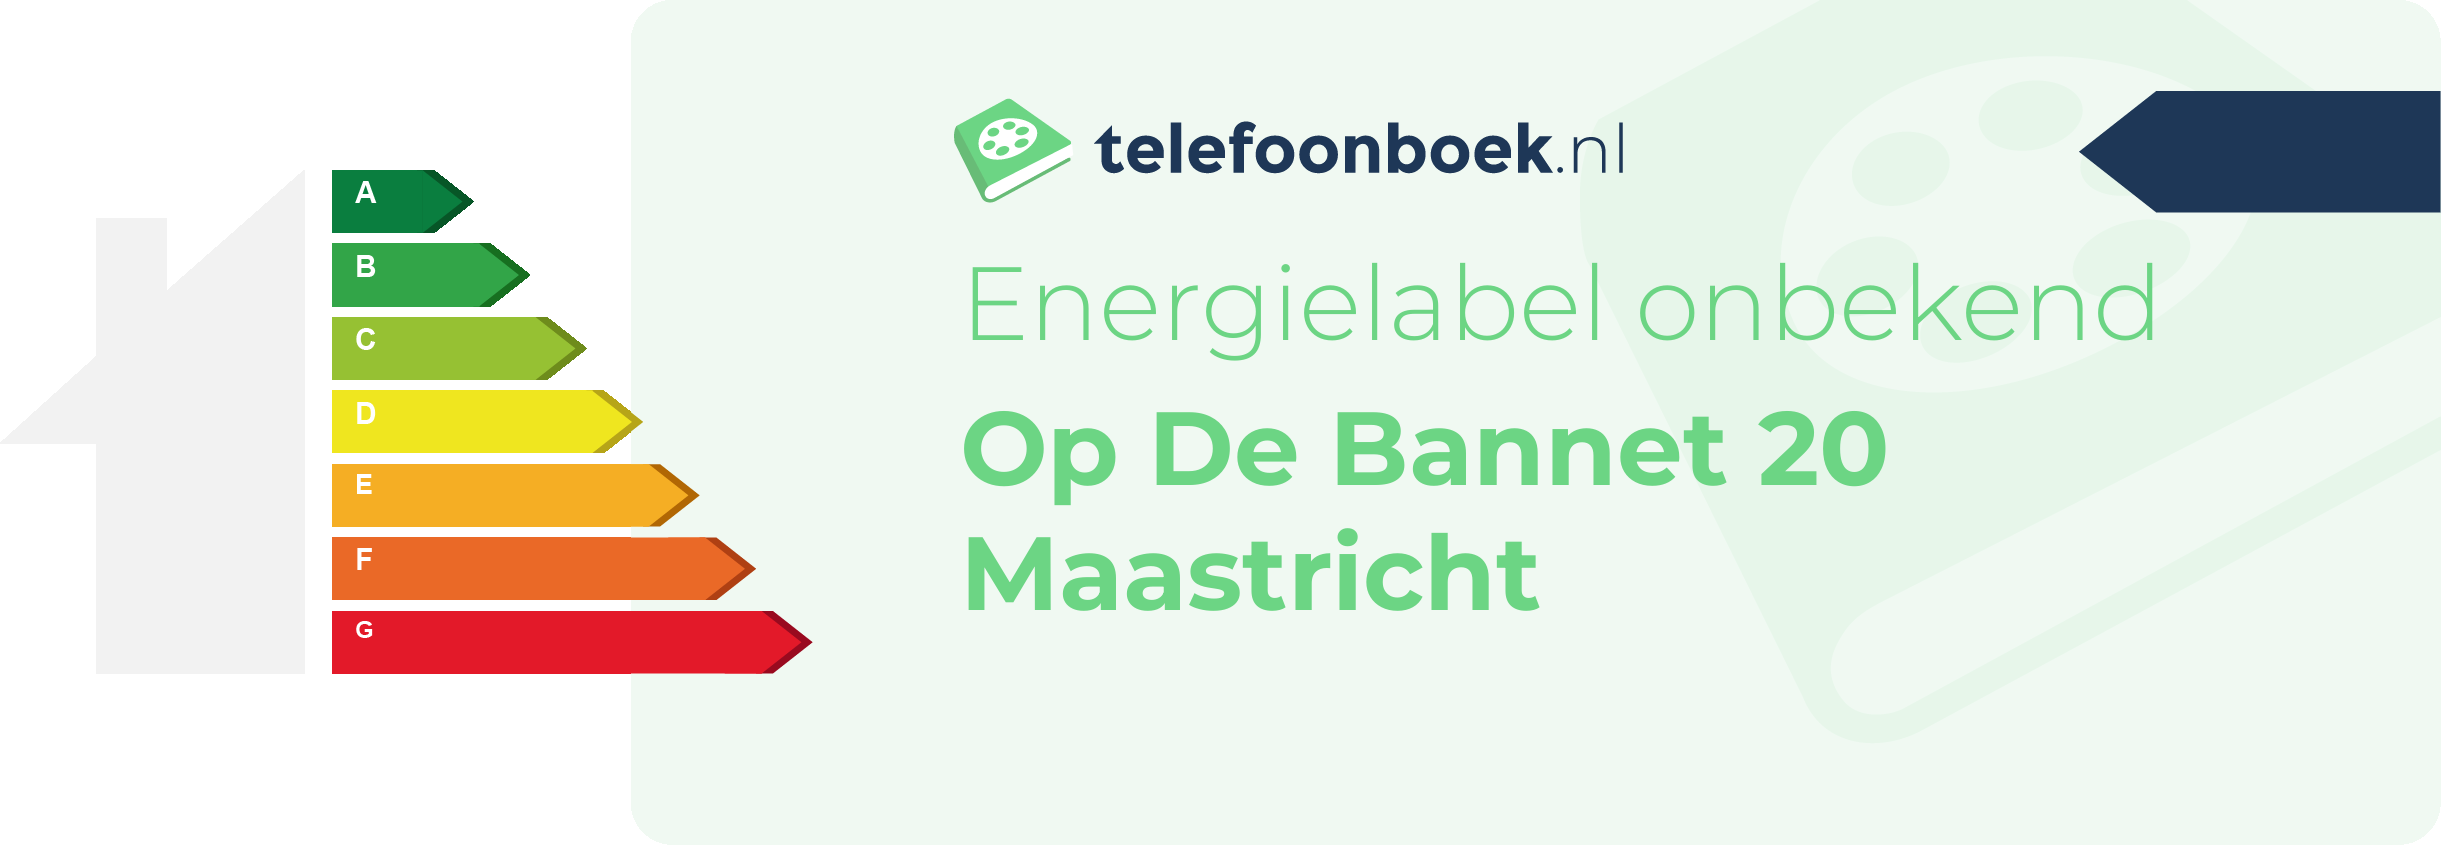 Energielabel Op De Bannet 20 Maastricht